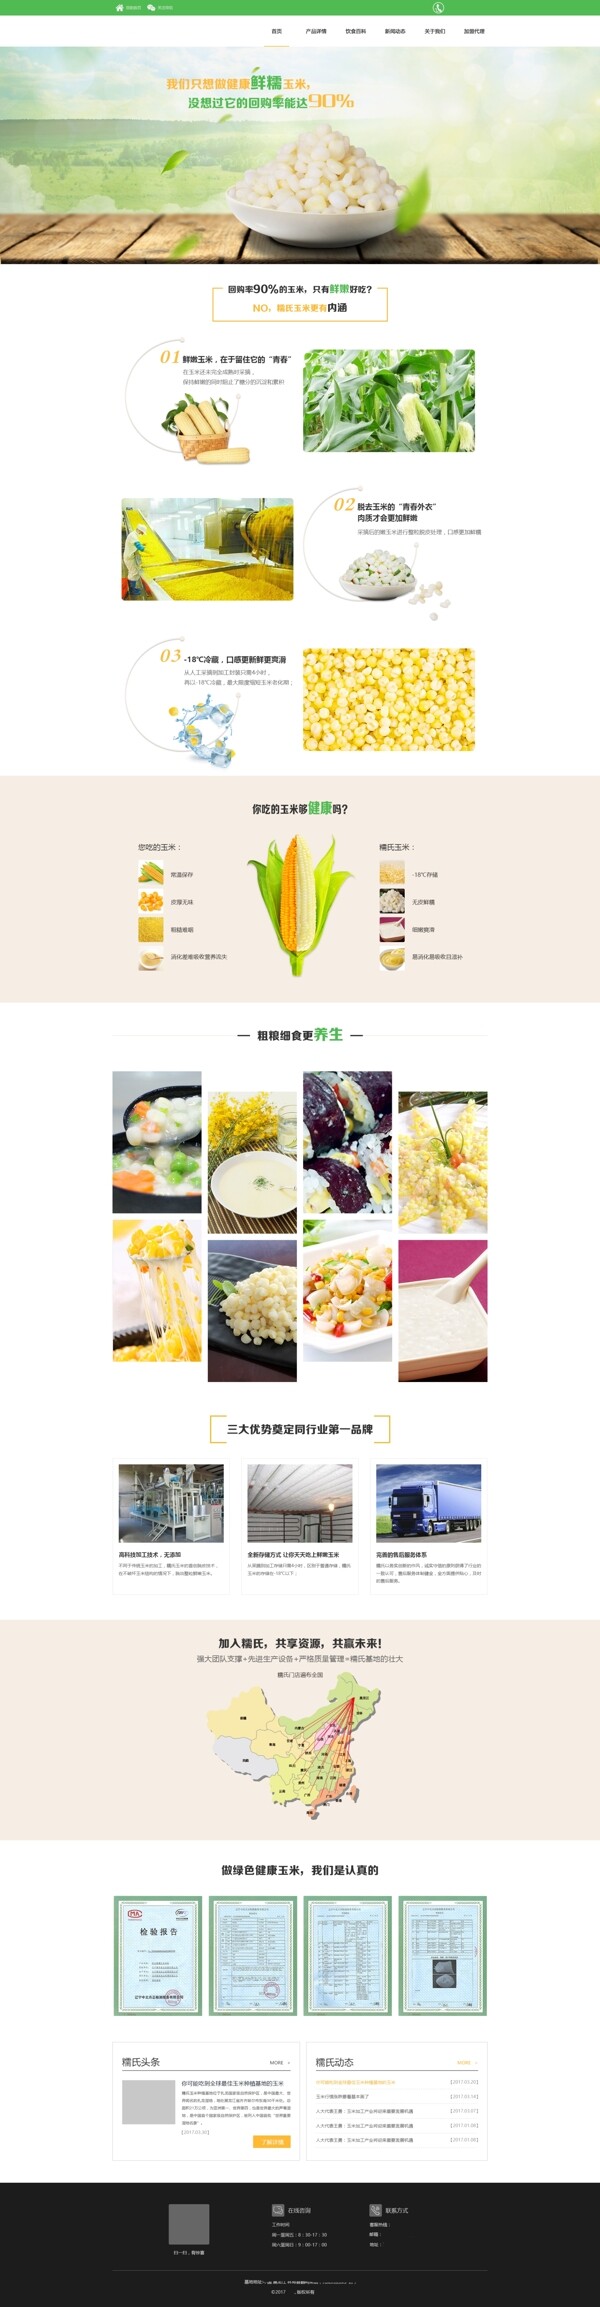 UI网页设计页面玉米粒美食